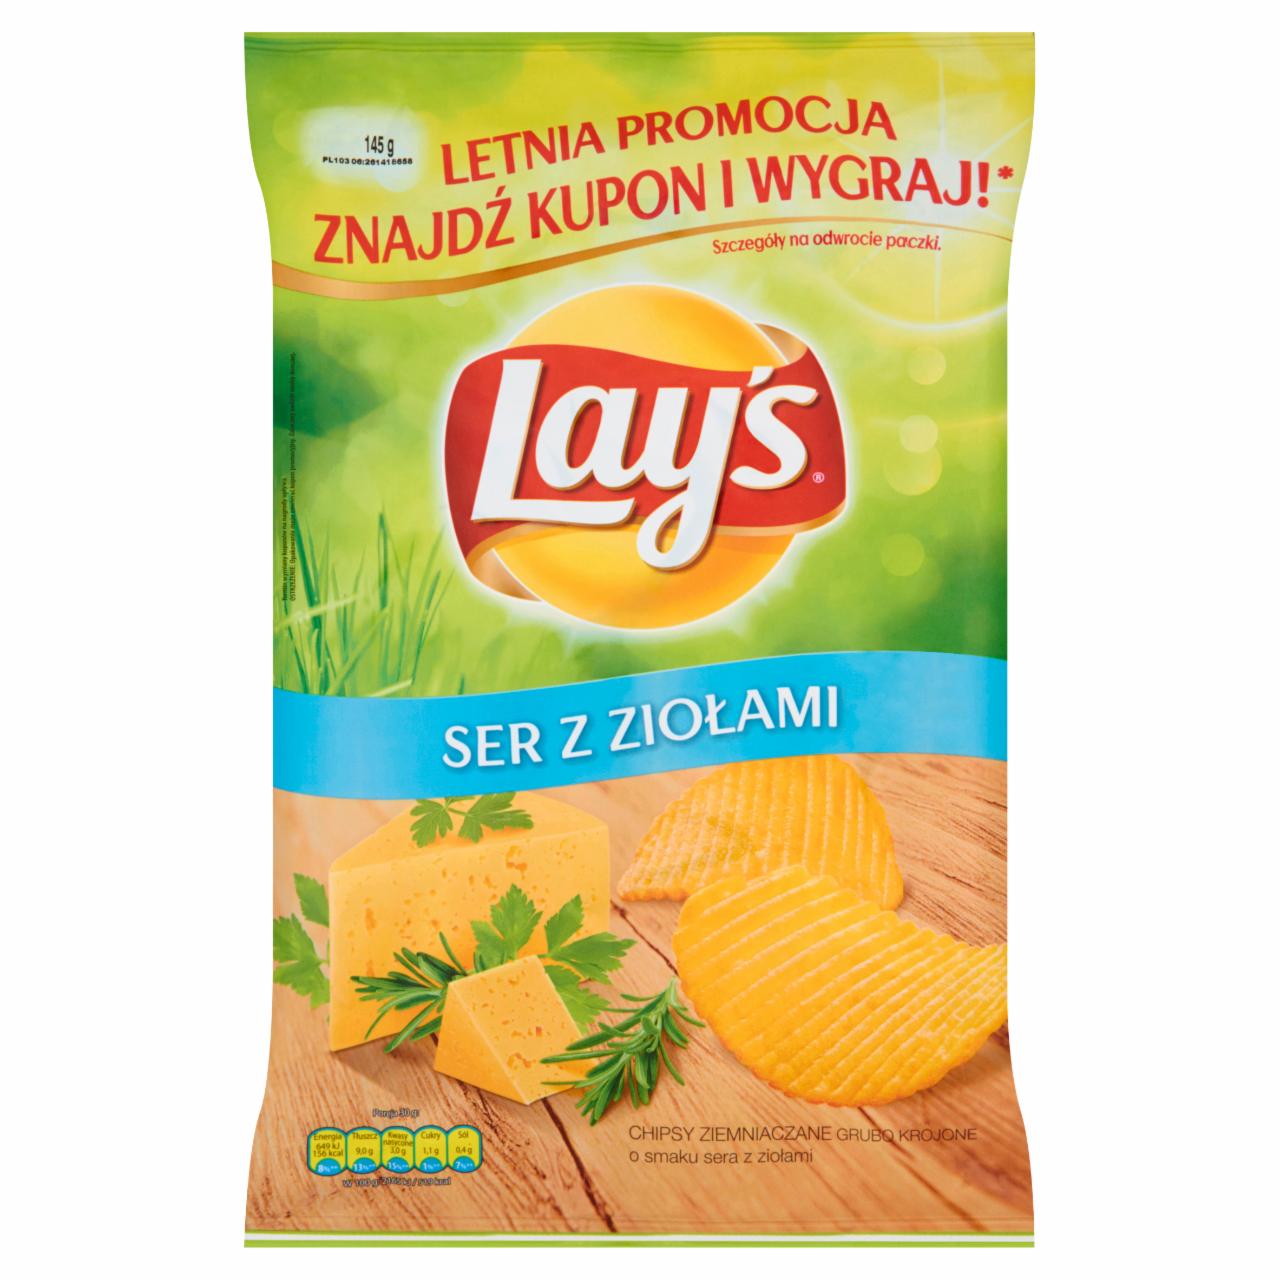 Zdjęcia - Lay's Ser z ziołami Chipsy ziemniaczane grubo krojone 145 g